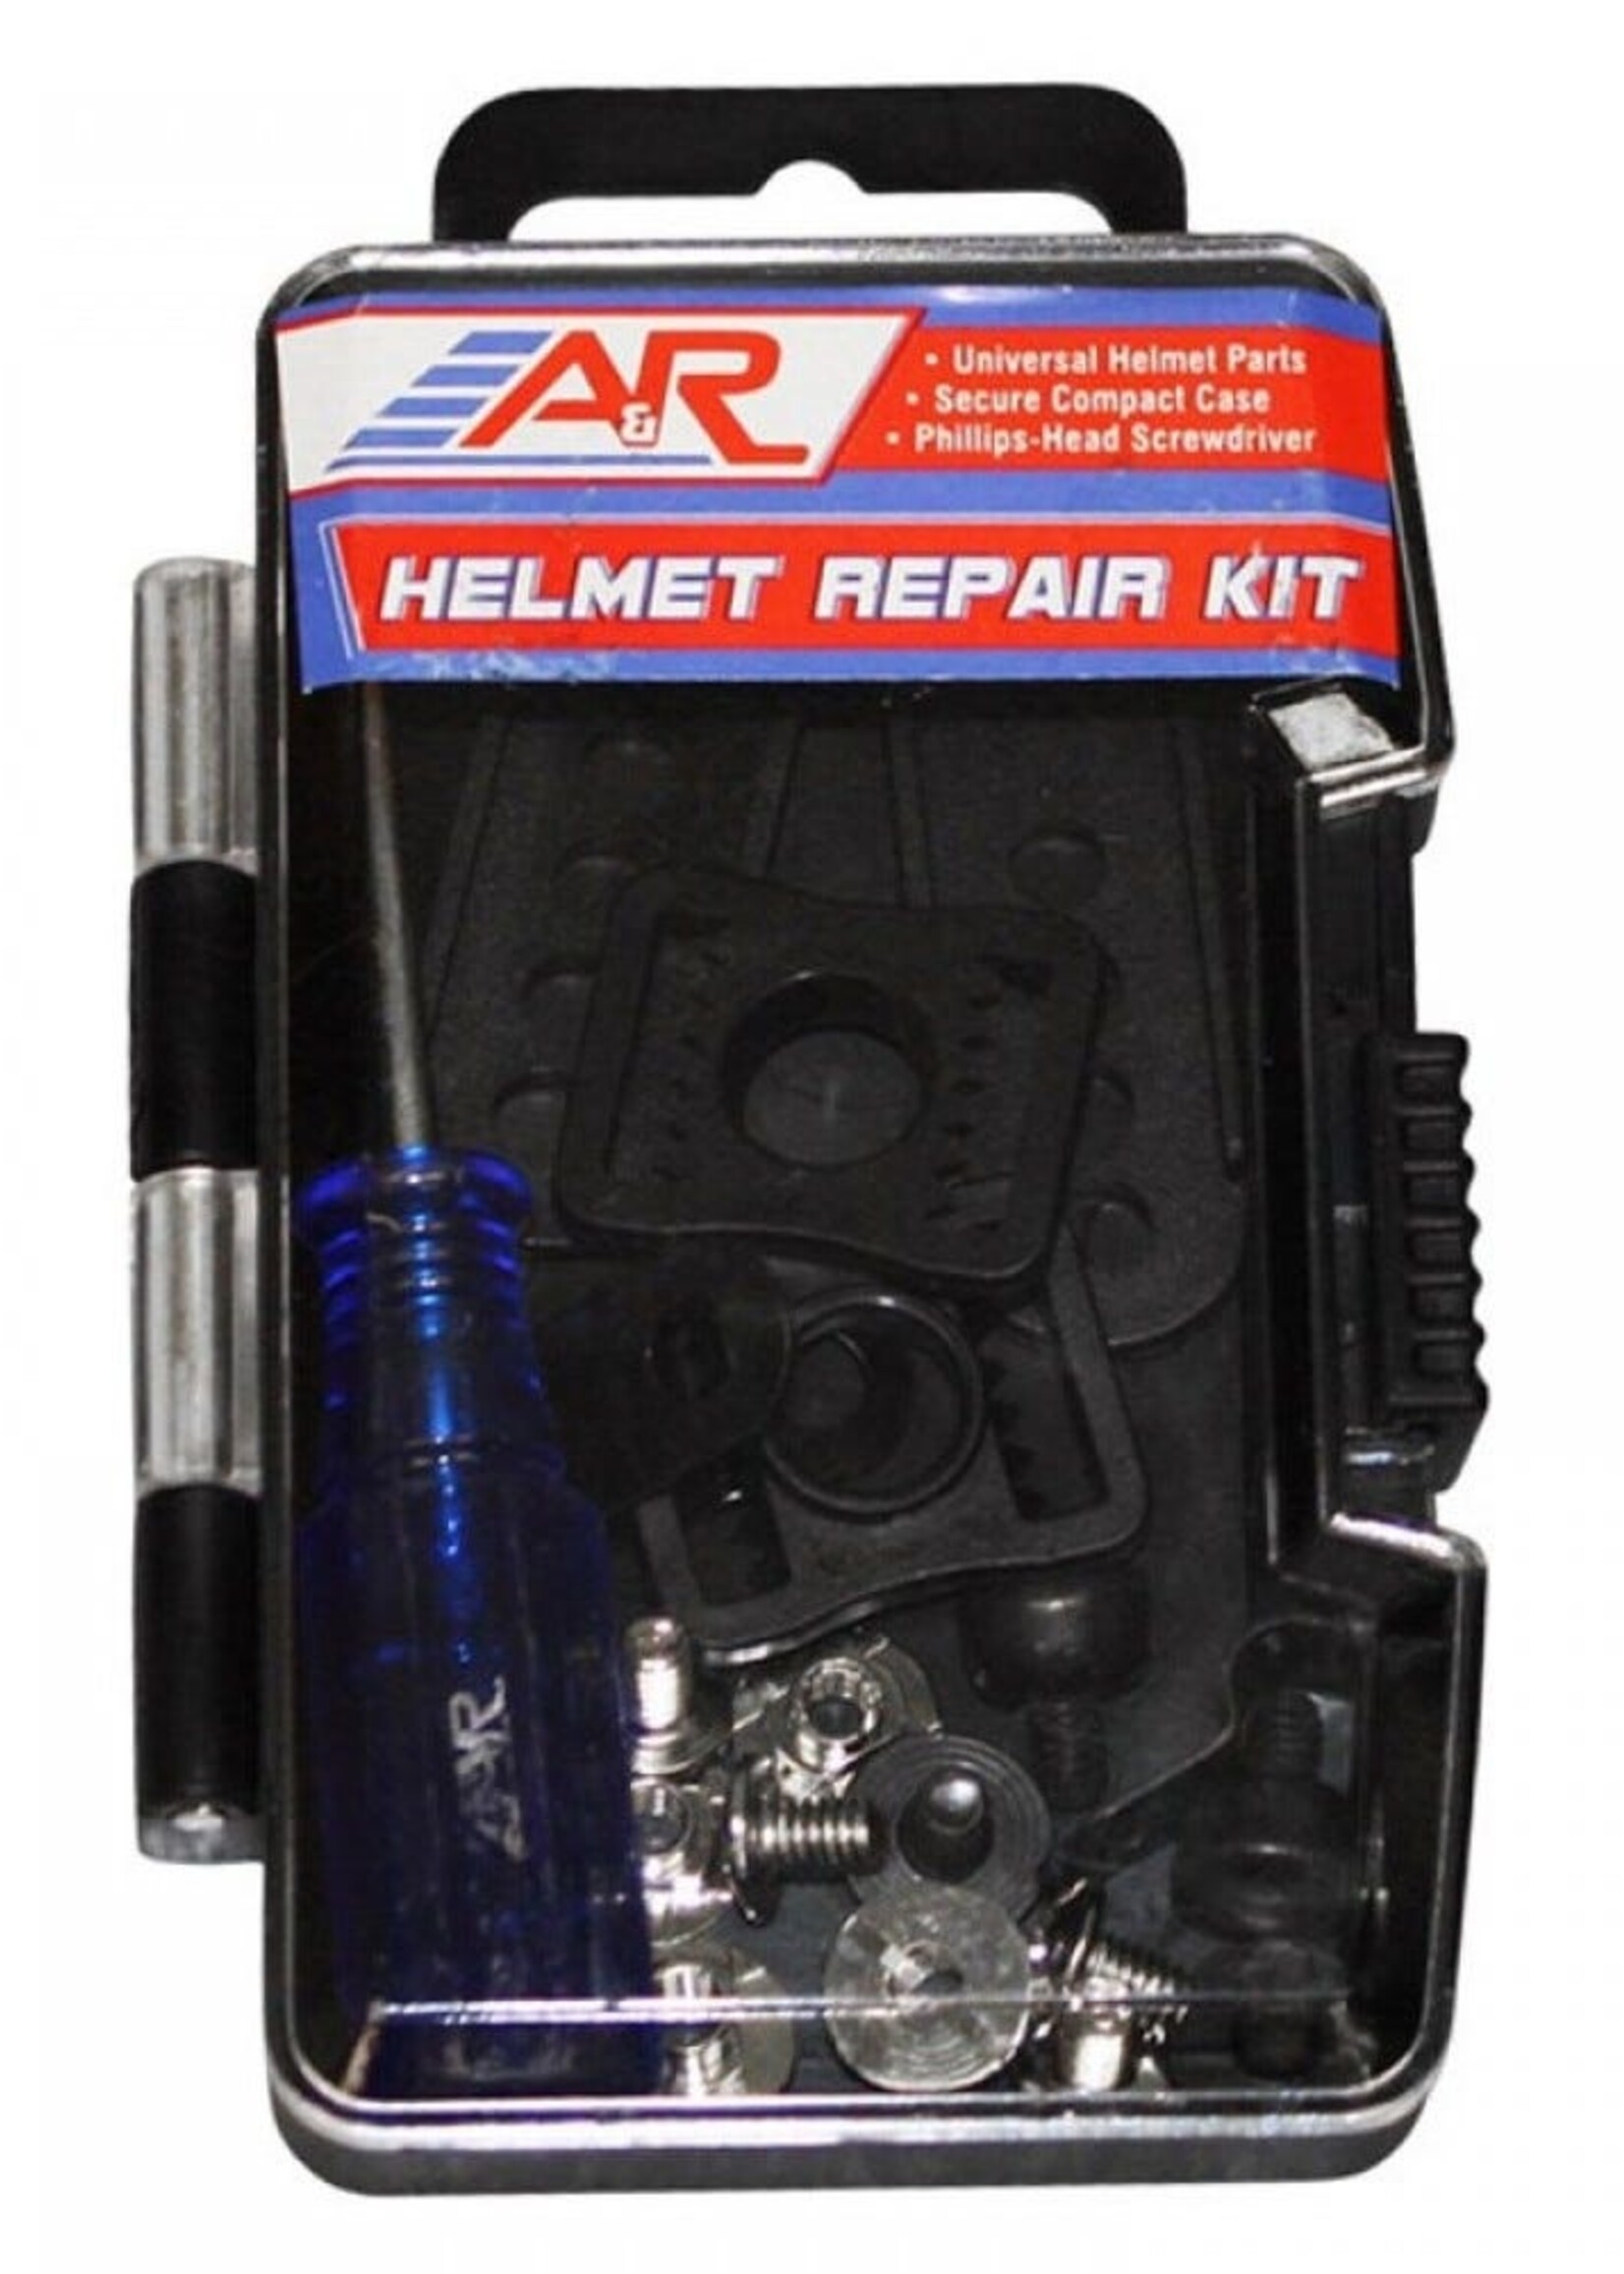 BAU A&R Helmet Repair Kit